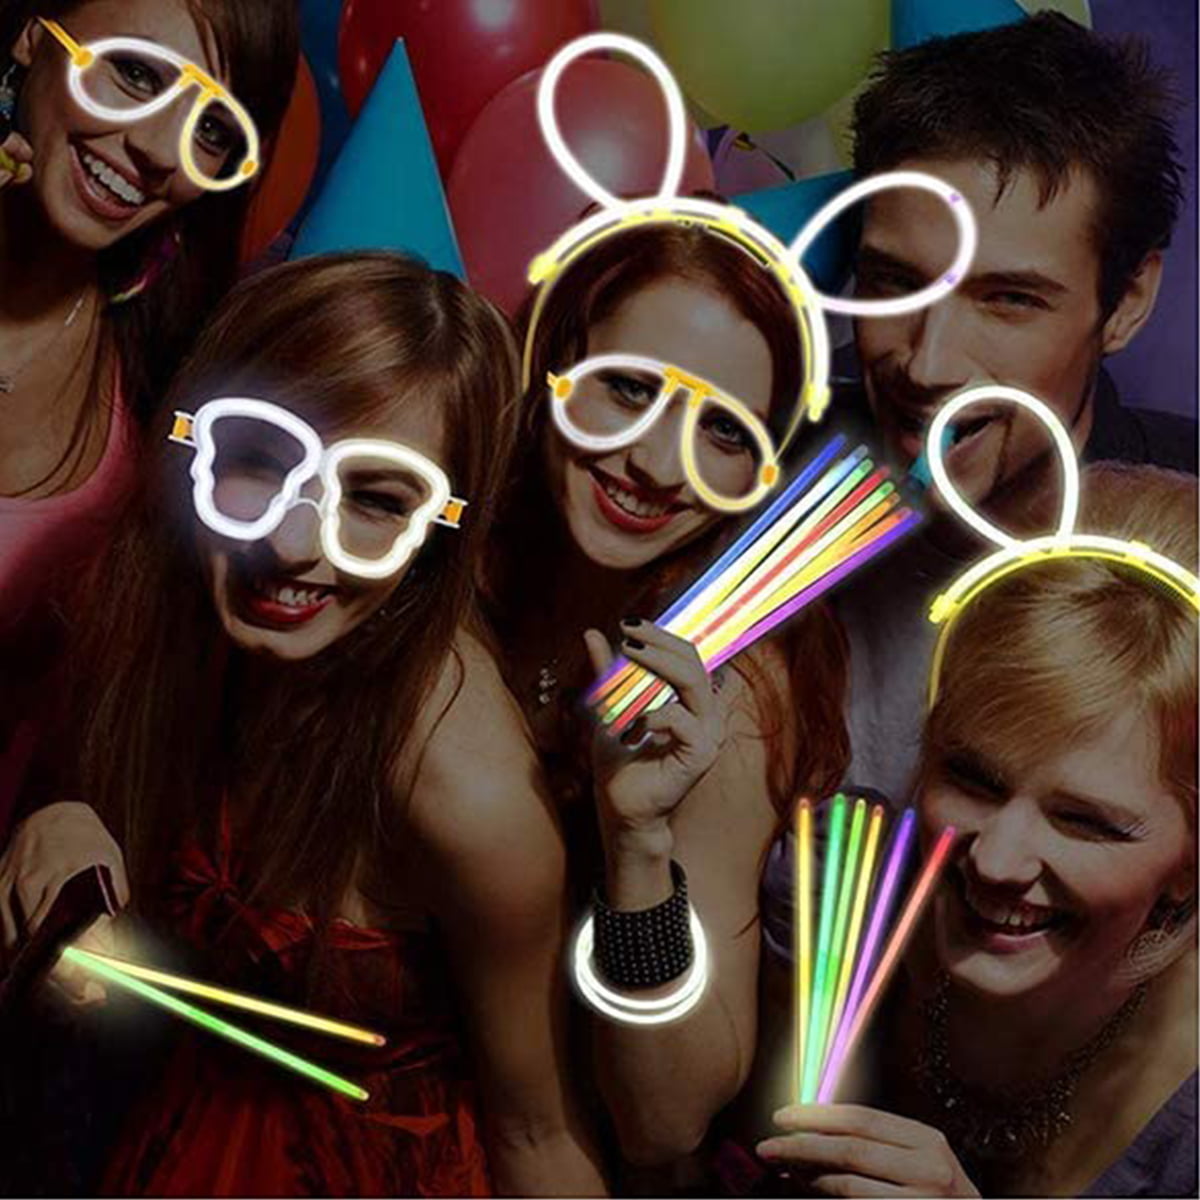 JIJI&CUI Glow Sticks,Glow Sticks Party Packs,Neon Glow Sticks Party Set for  Kids,Glow In Dark Party Supplies Connectors for Glow Bracelets Flower,Glow